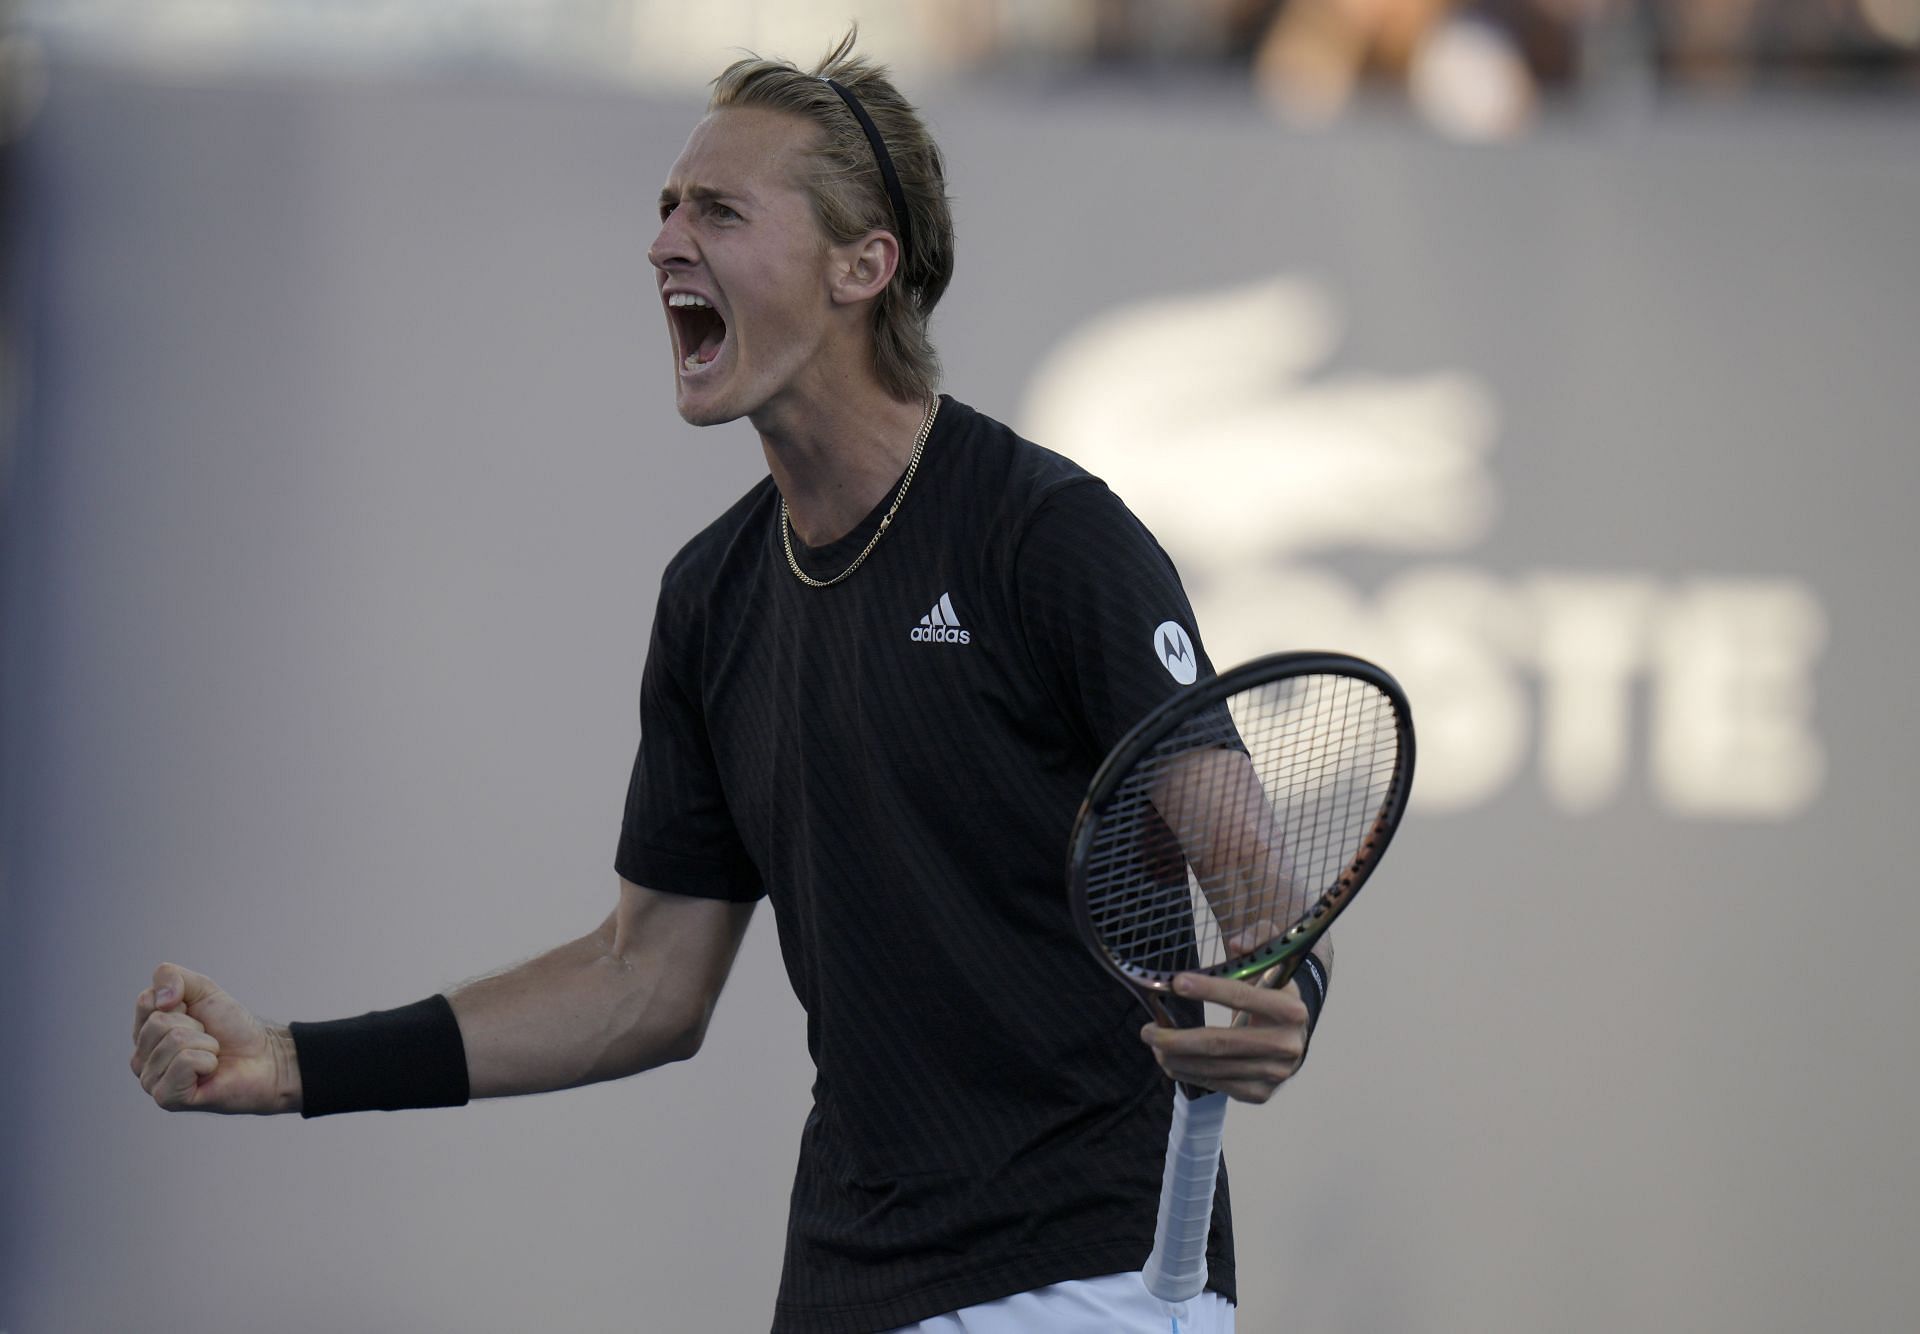 Sebastian Korda at the 2022 Miami Open